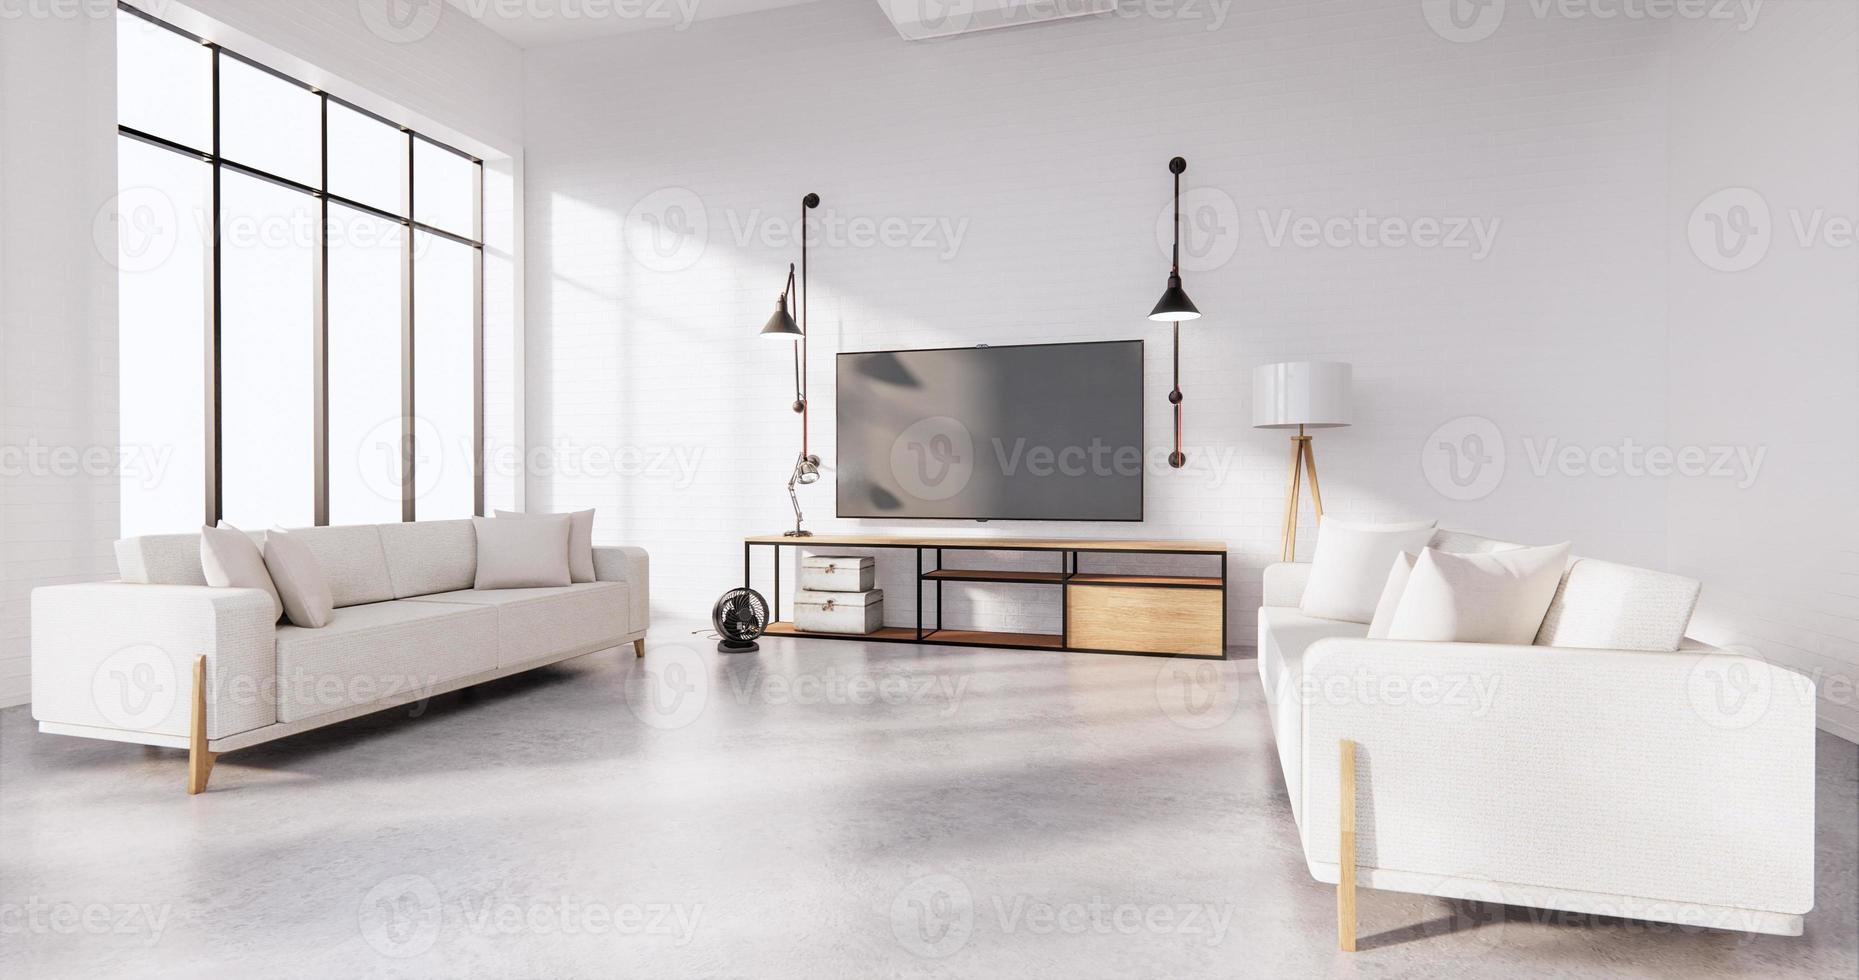 smart tv op kast in woonkamer loft-stijl met witte bakstenen muur op houten vloer en sofa fauteuil.3d rendering foto